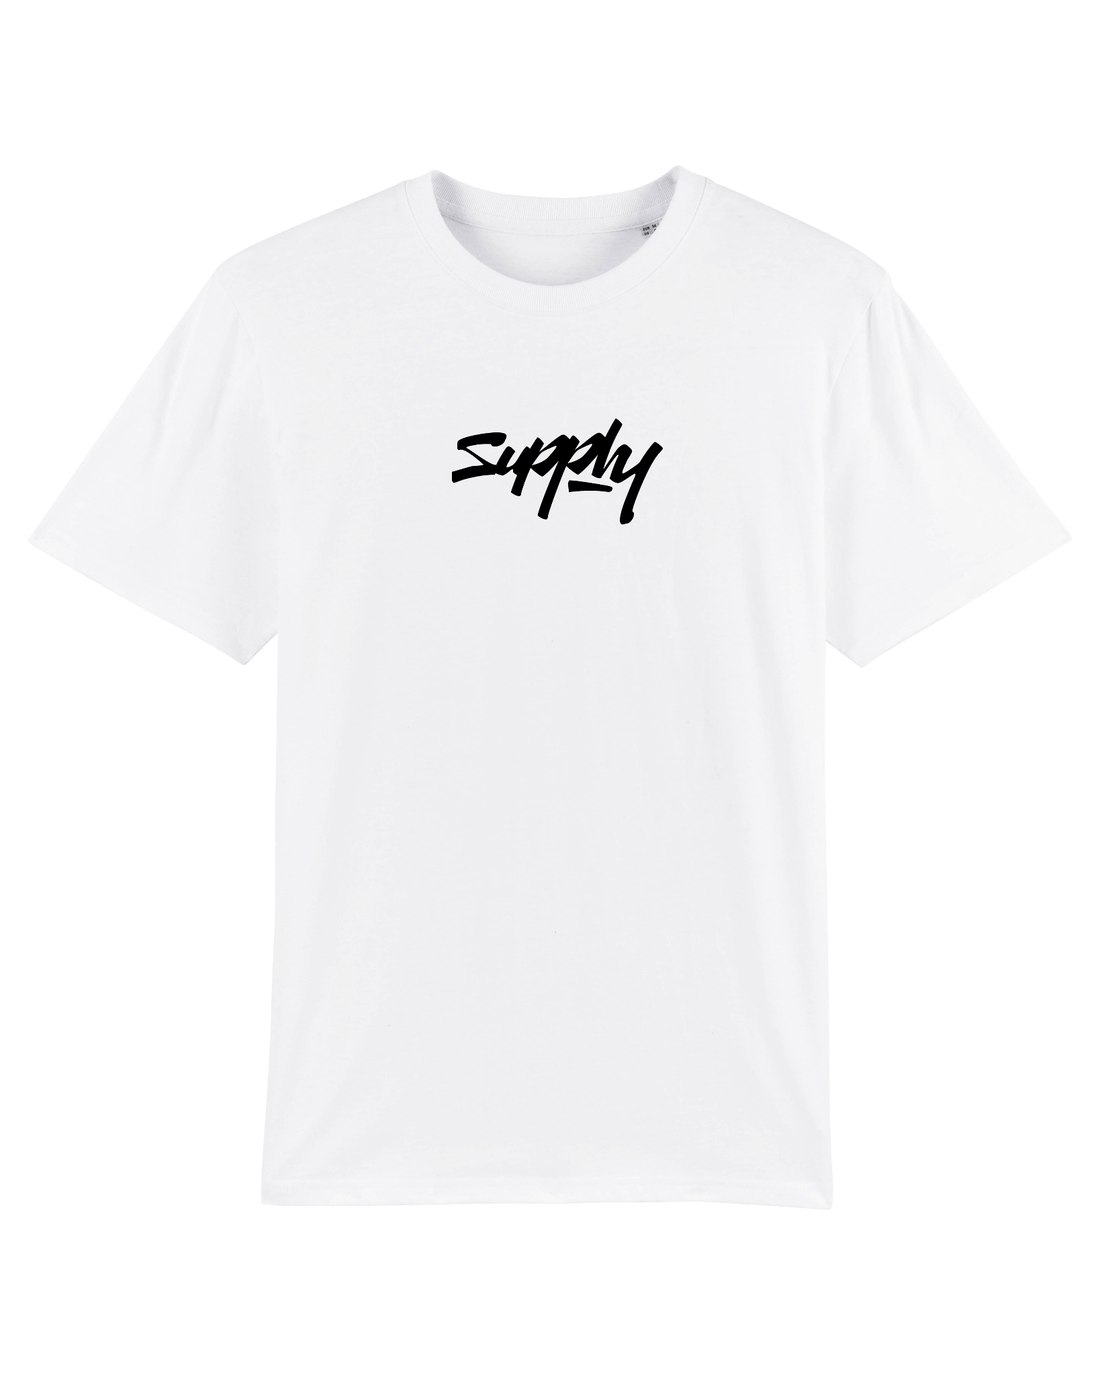 White Skater T-Shirt, Supply Logo Front Print